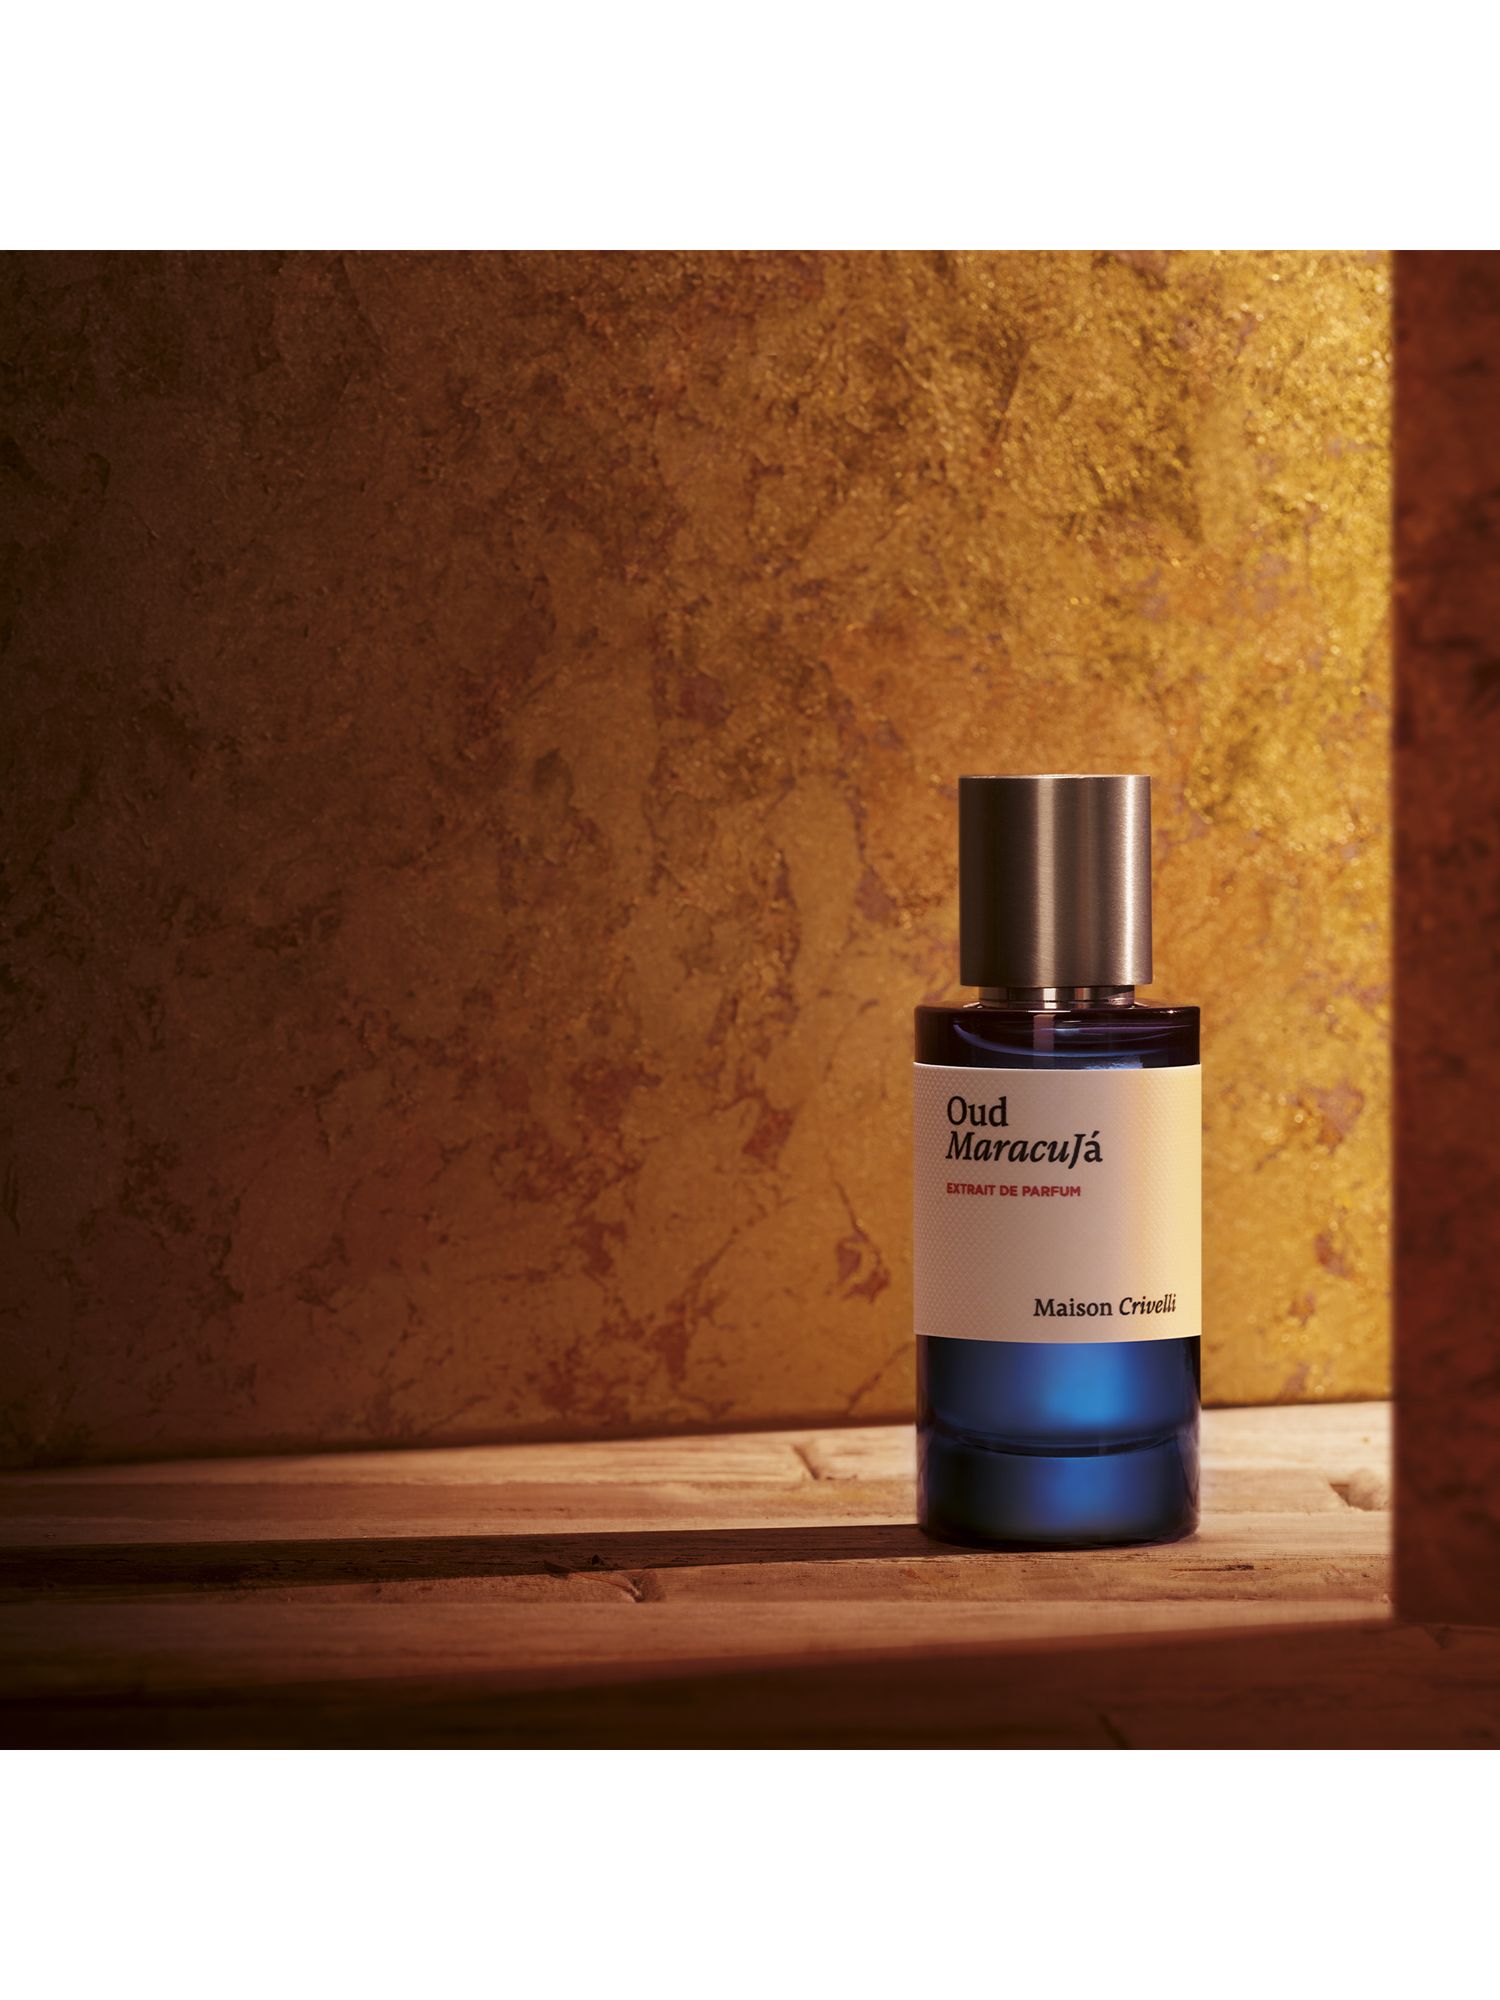 Maison Crivelli Oud Maracuja Extrait de Parfum, 50ml